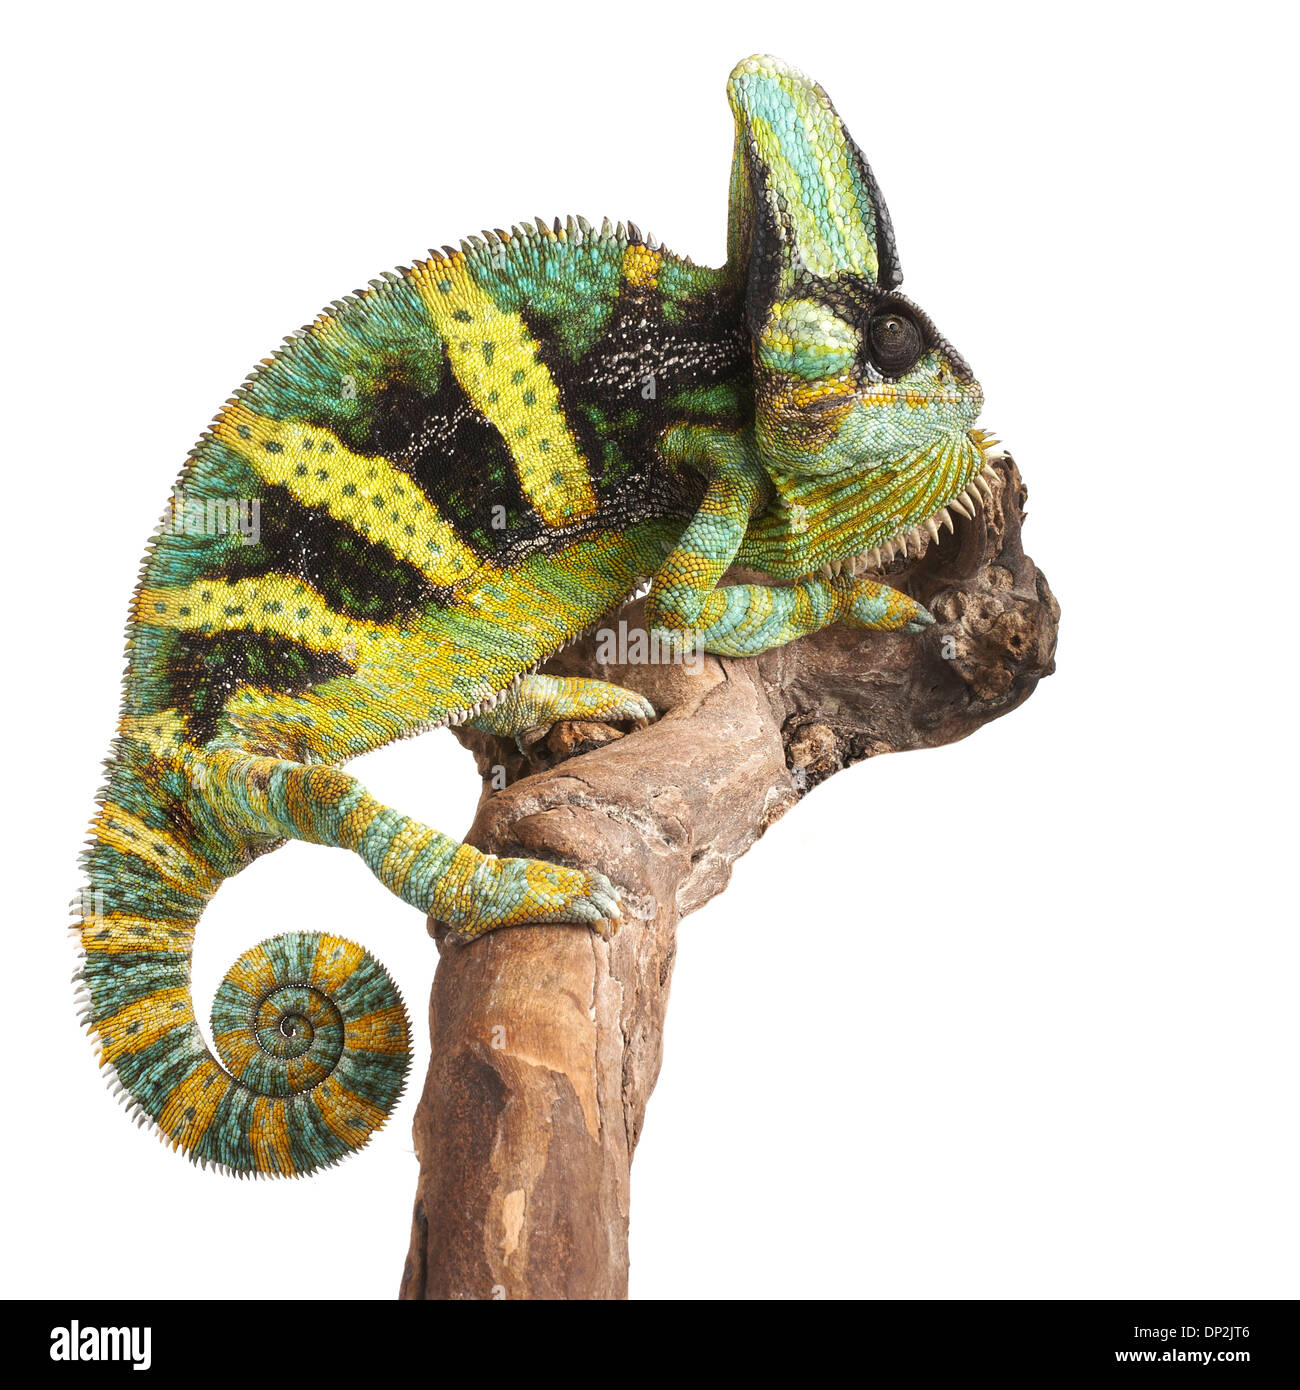 Veiled chameleon Stock Photo